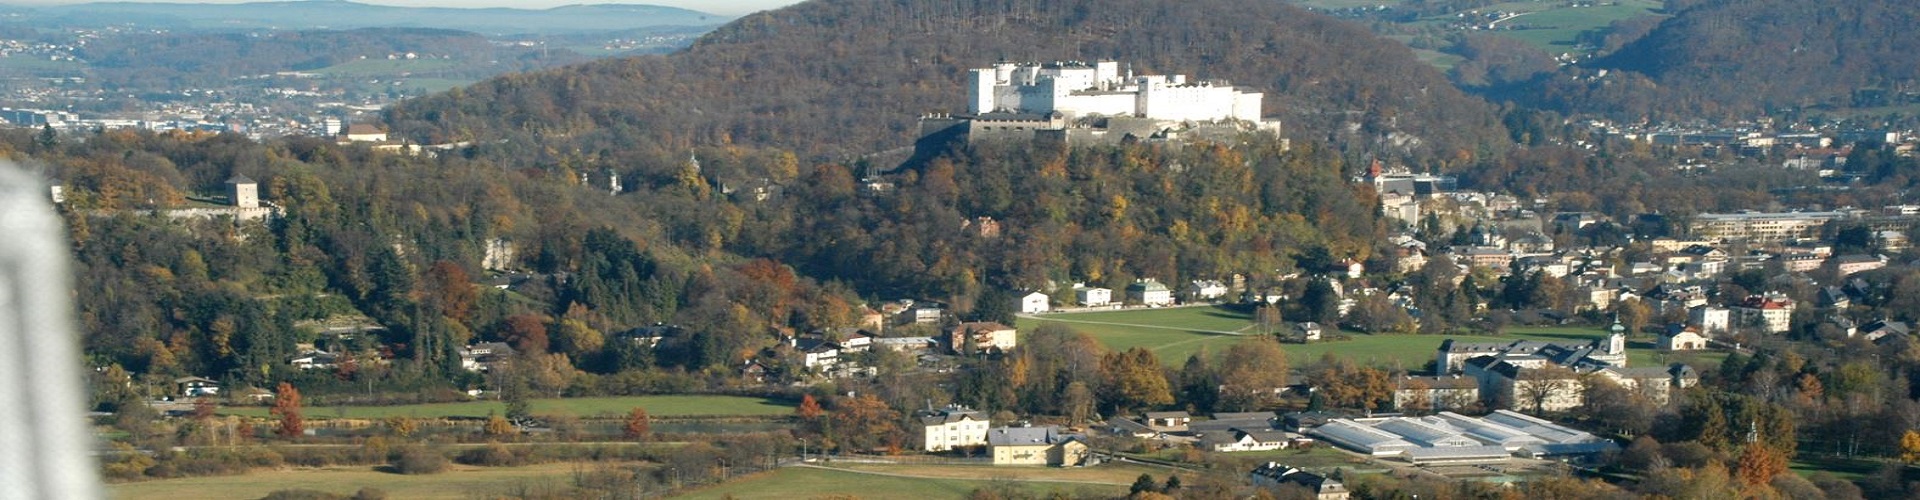 Eine Luftaufnahme von der Stadt Salzburg mit dem Festungsberg im Hintergrund.